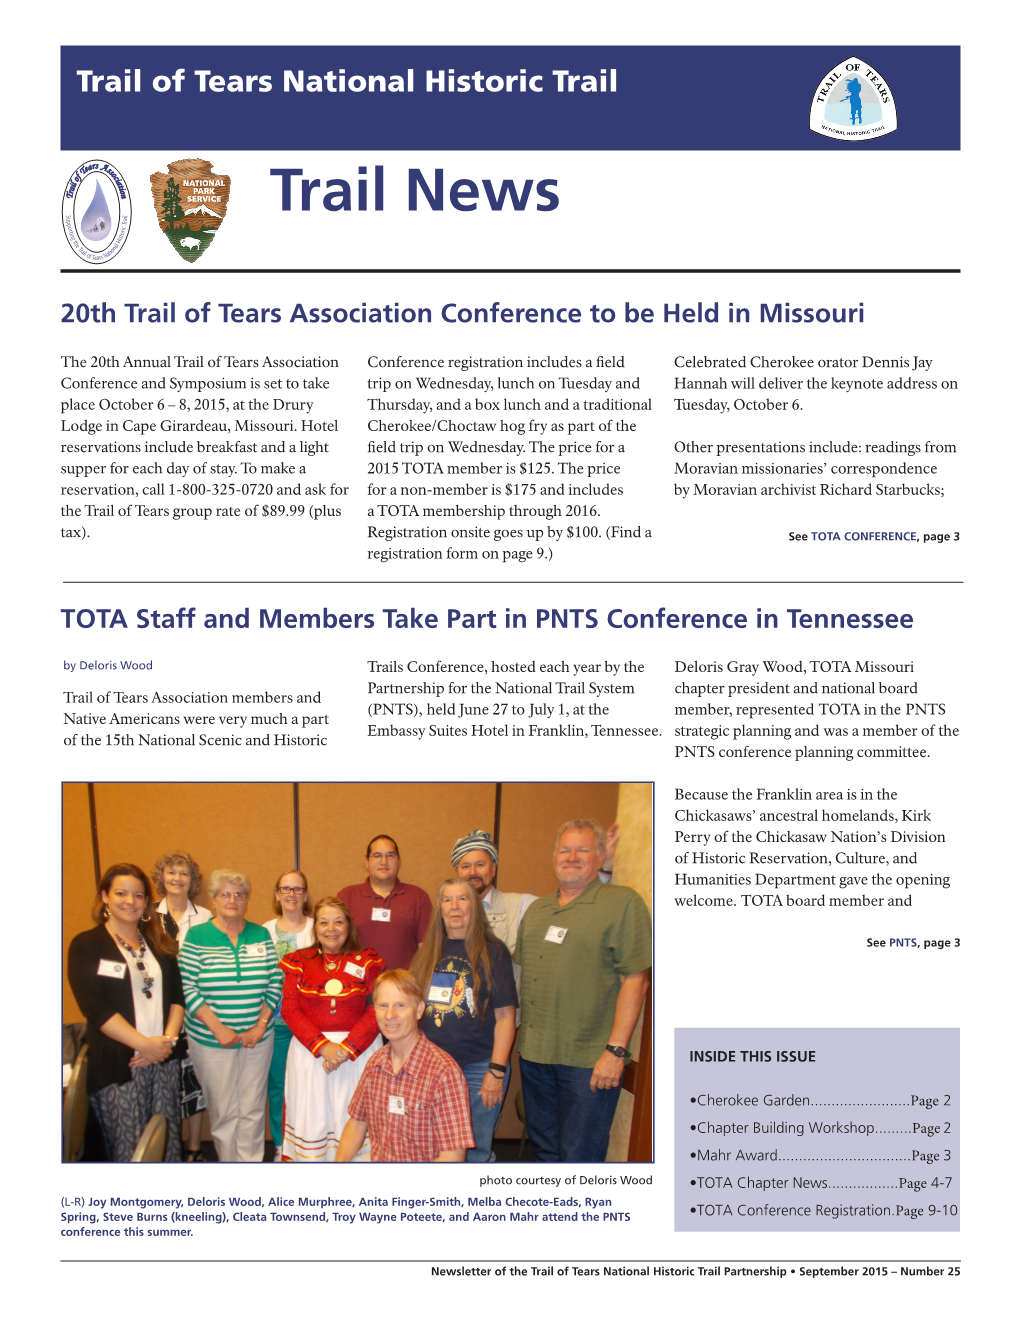 2015 Trail News